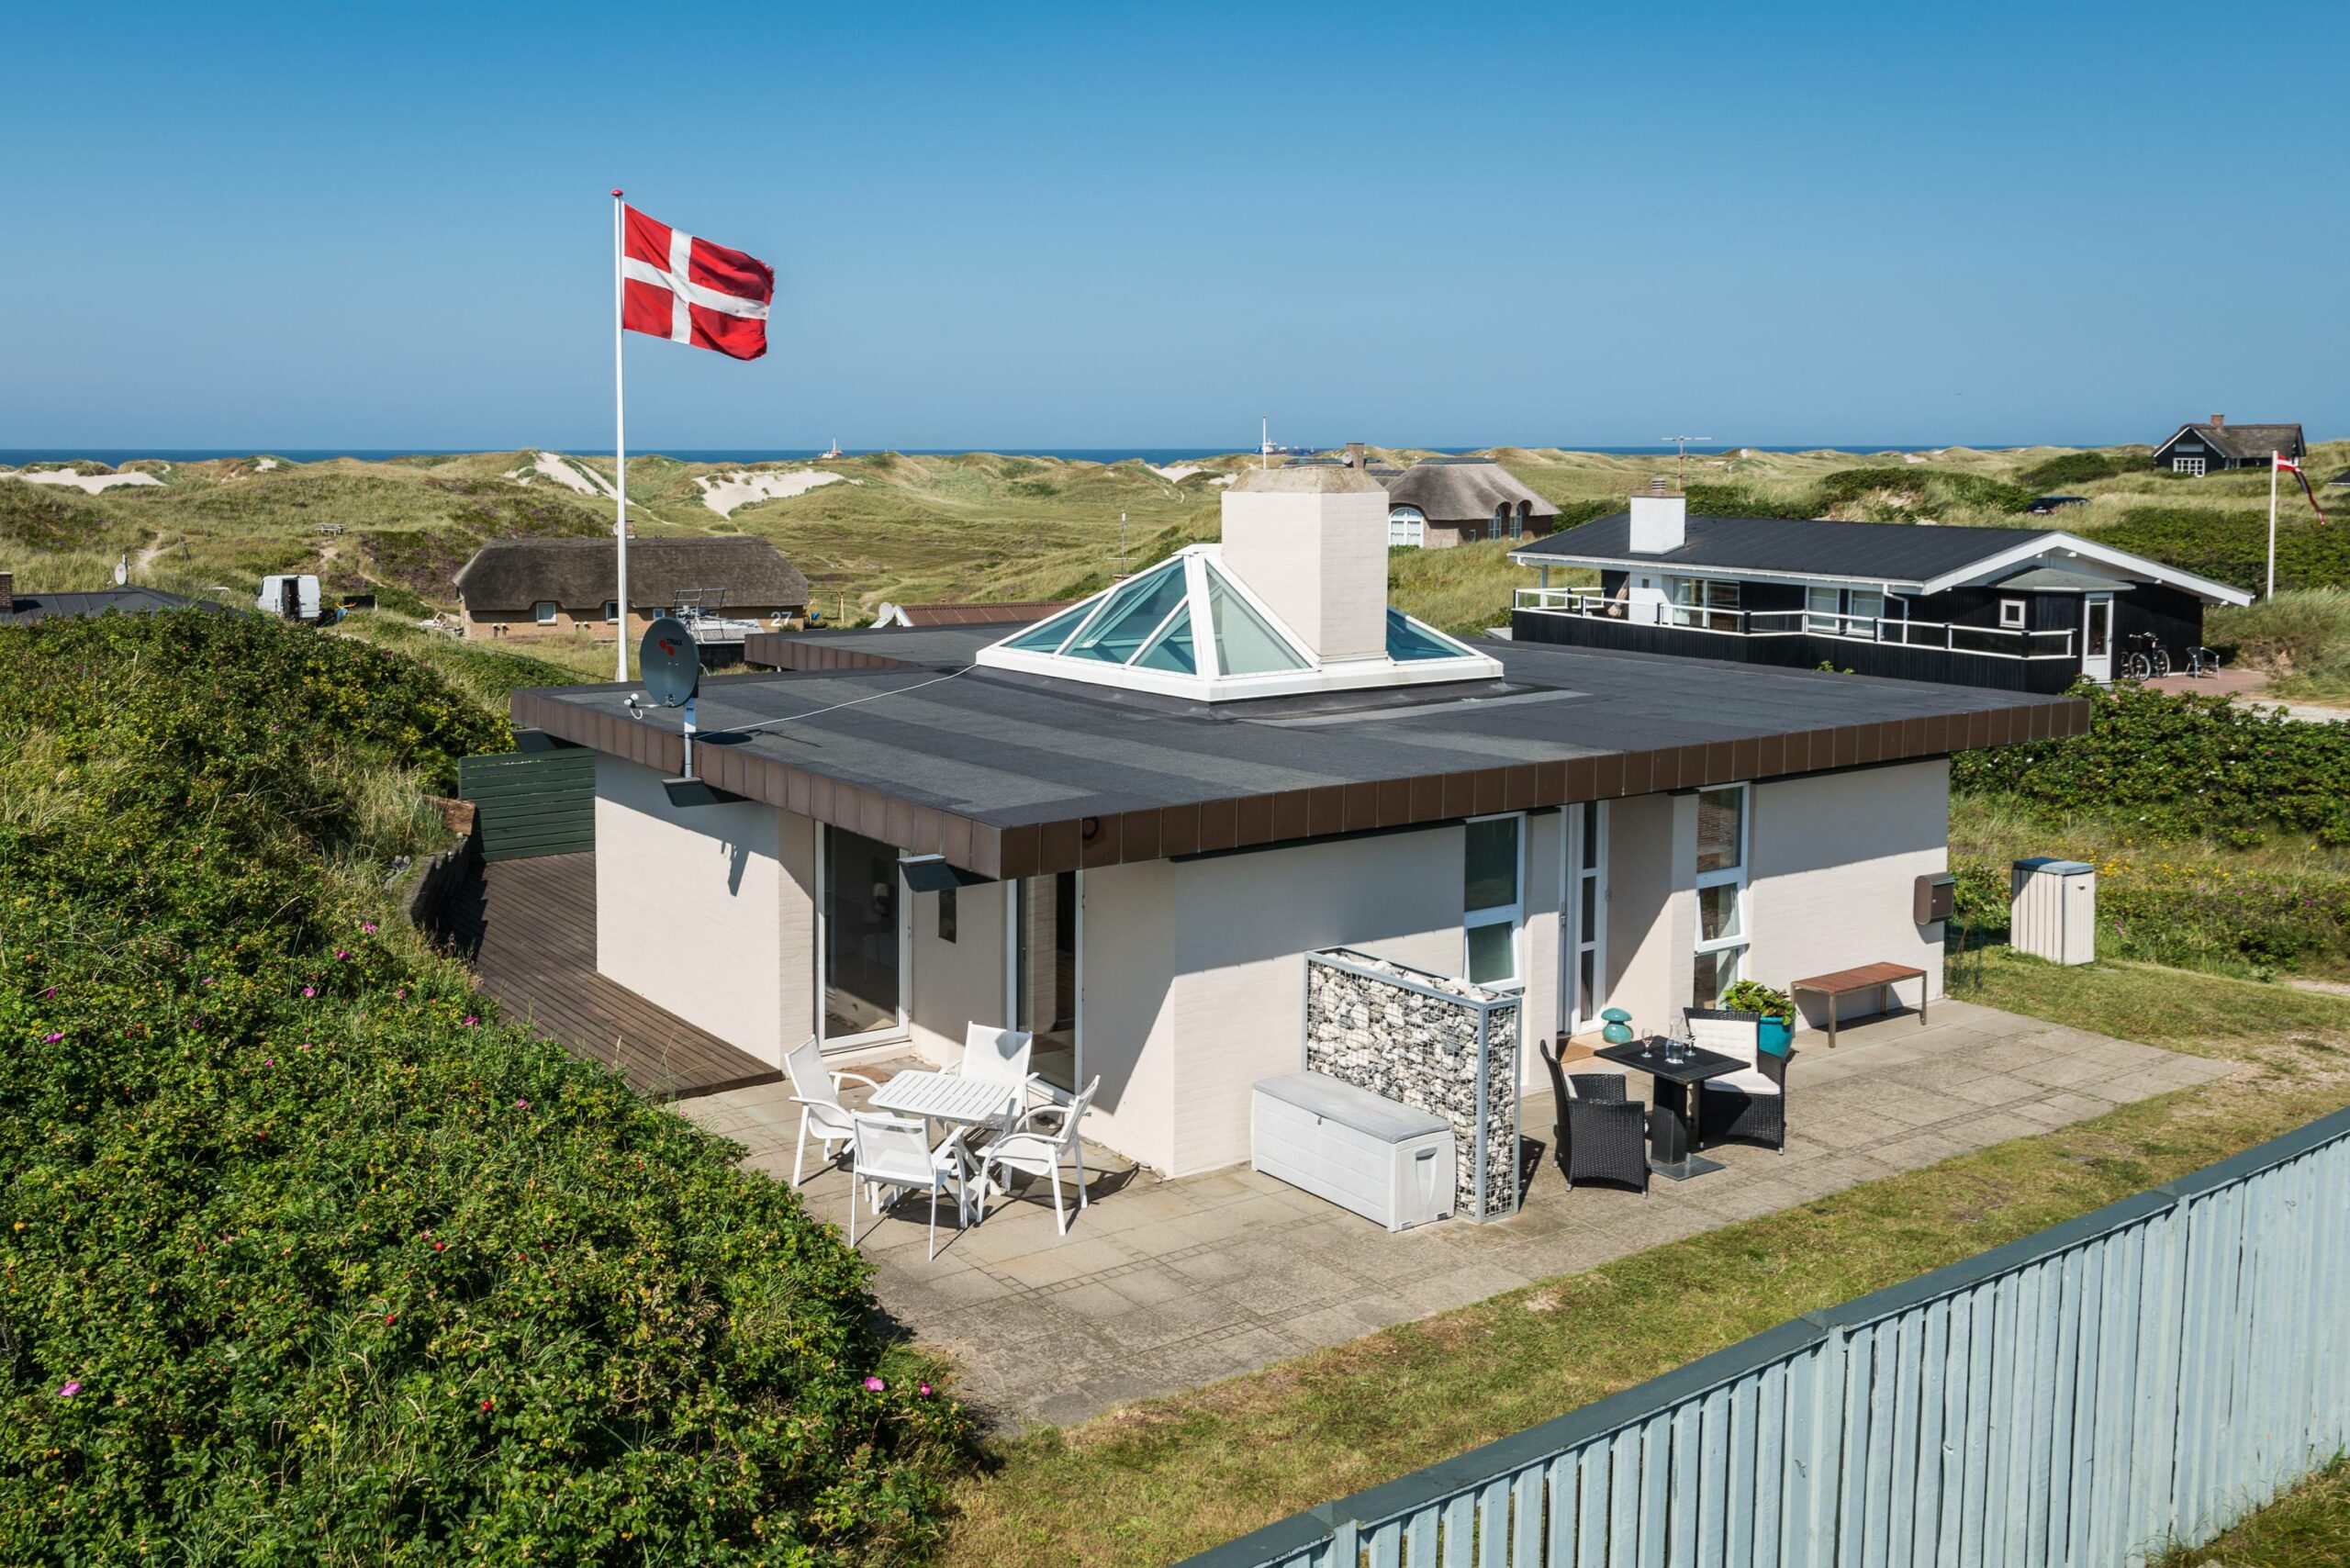 Billeder af sommerhuse i hele Danmark